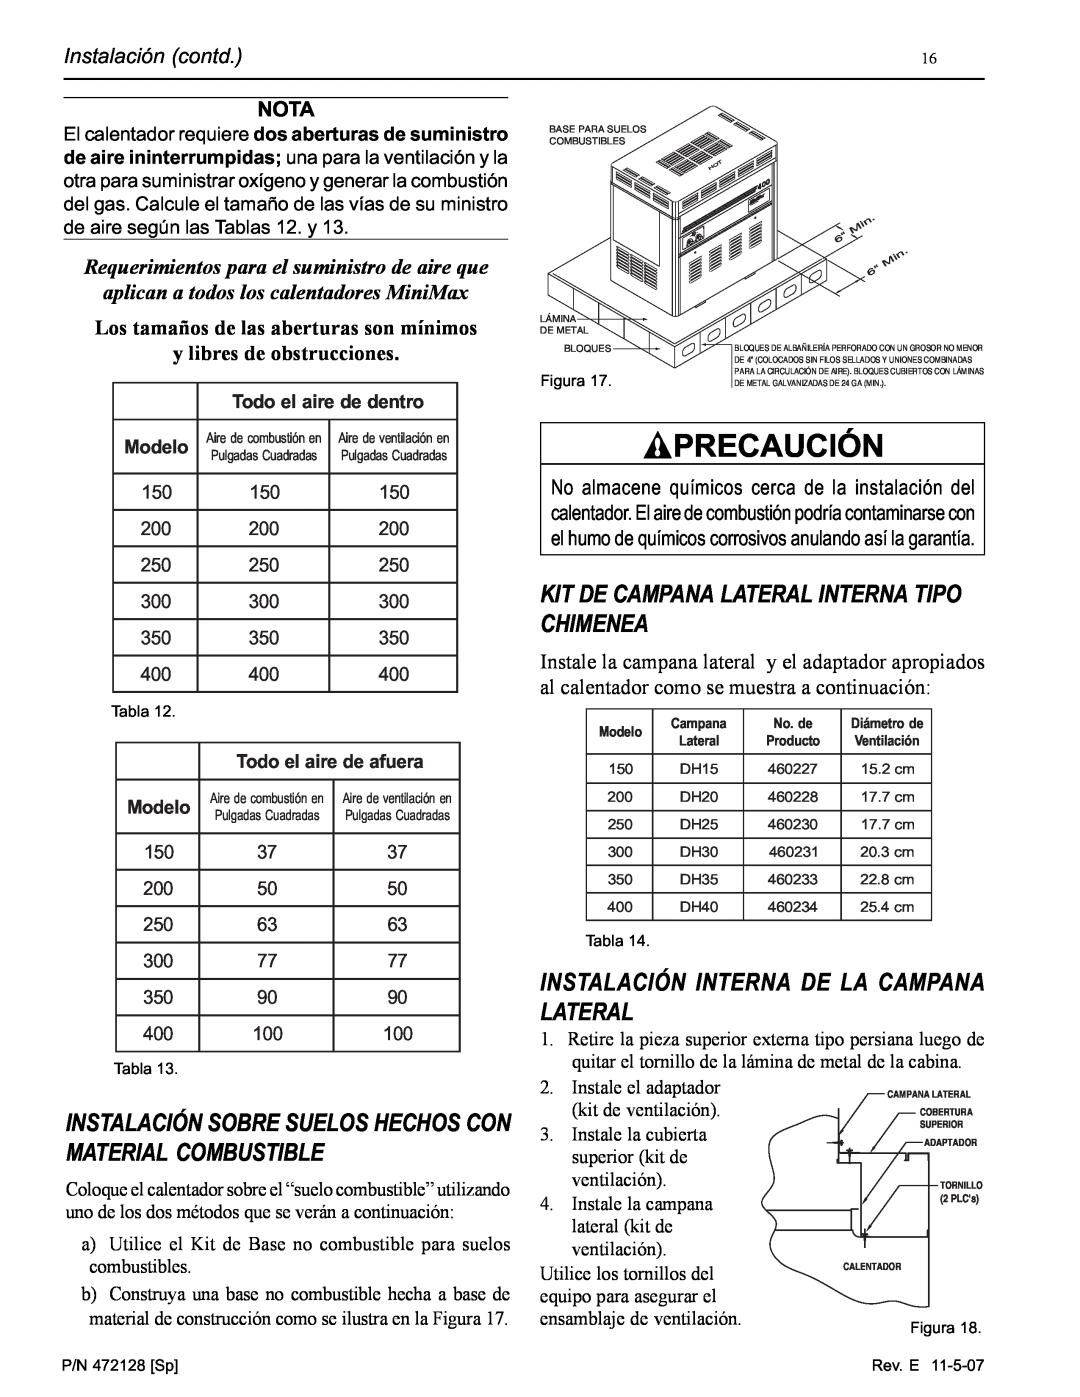 Pentair Hot Tub manual Kit De Campana Lateral Interna Tipo Chimenea, Instalación Interna De La Campana Lateral, Precaución 